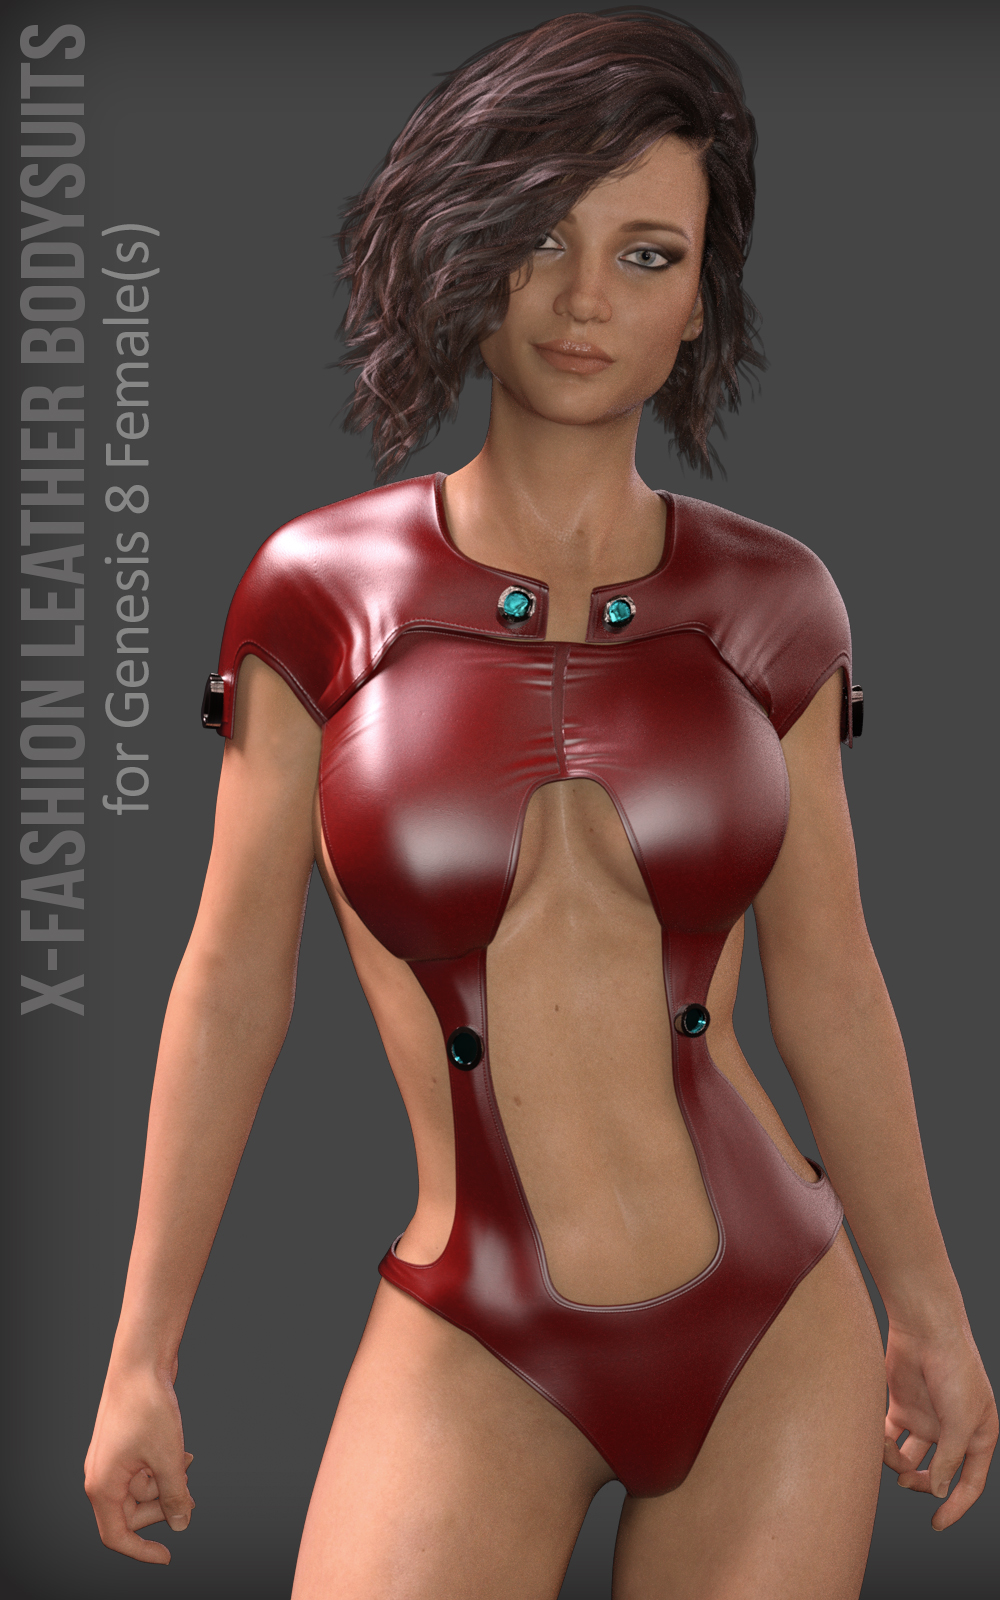 Female Full Bodysuit - 3D Model by vicky180